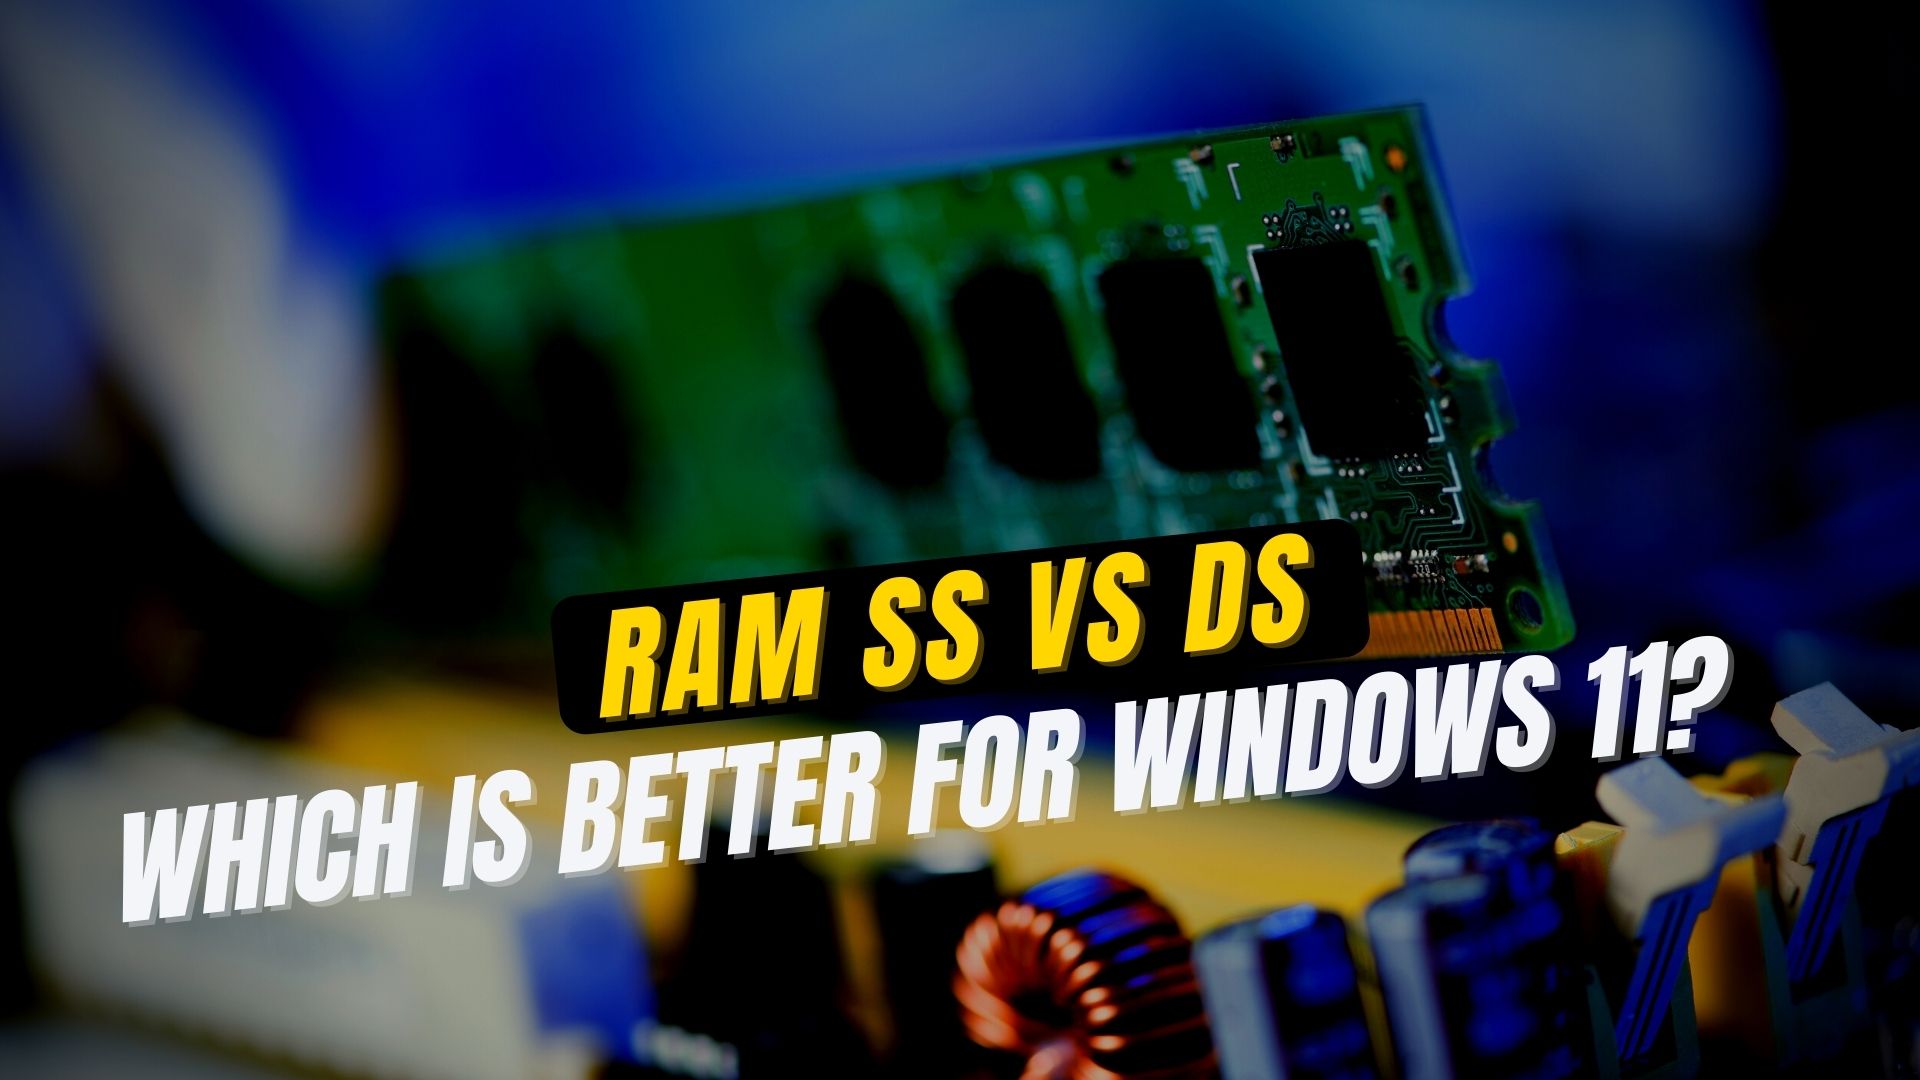 RAM SS vs DS